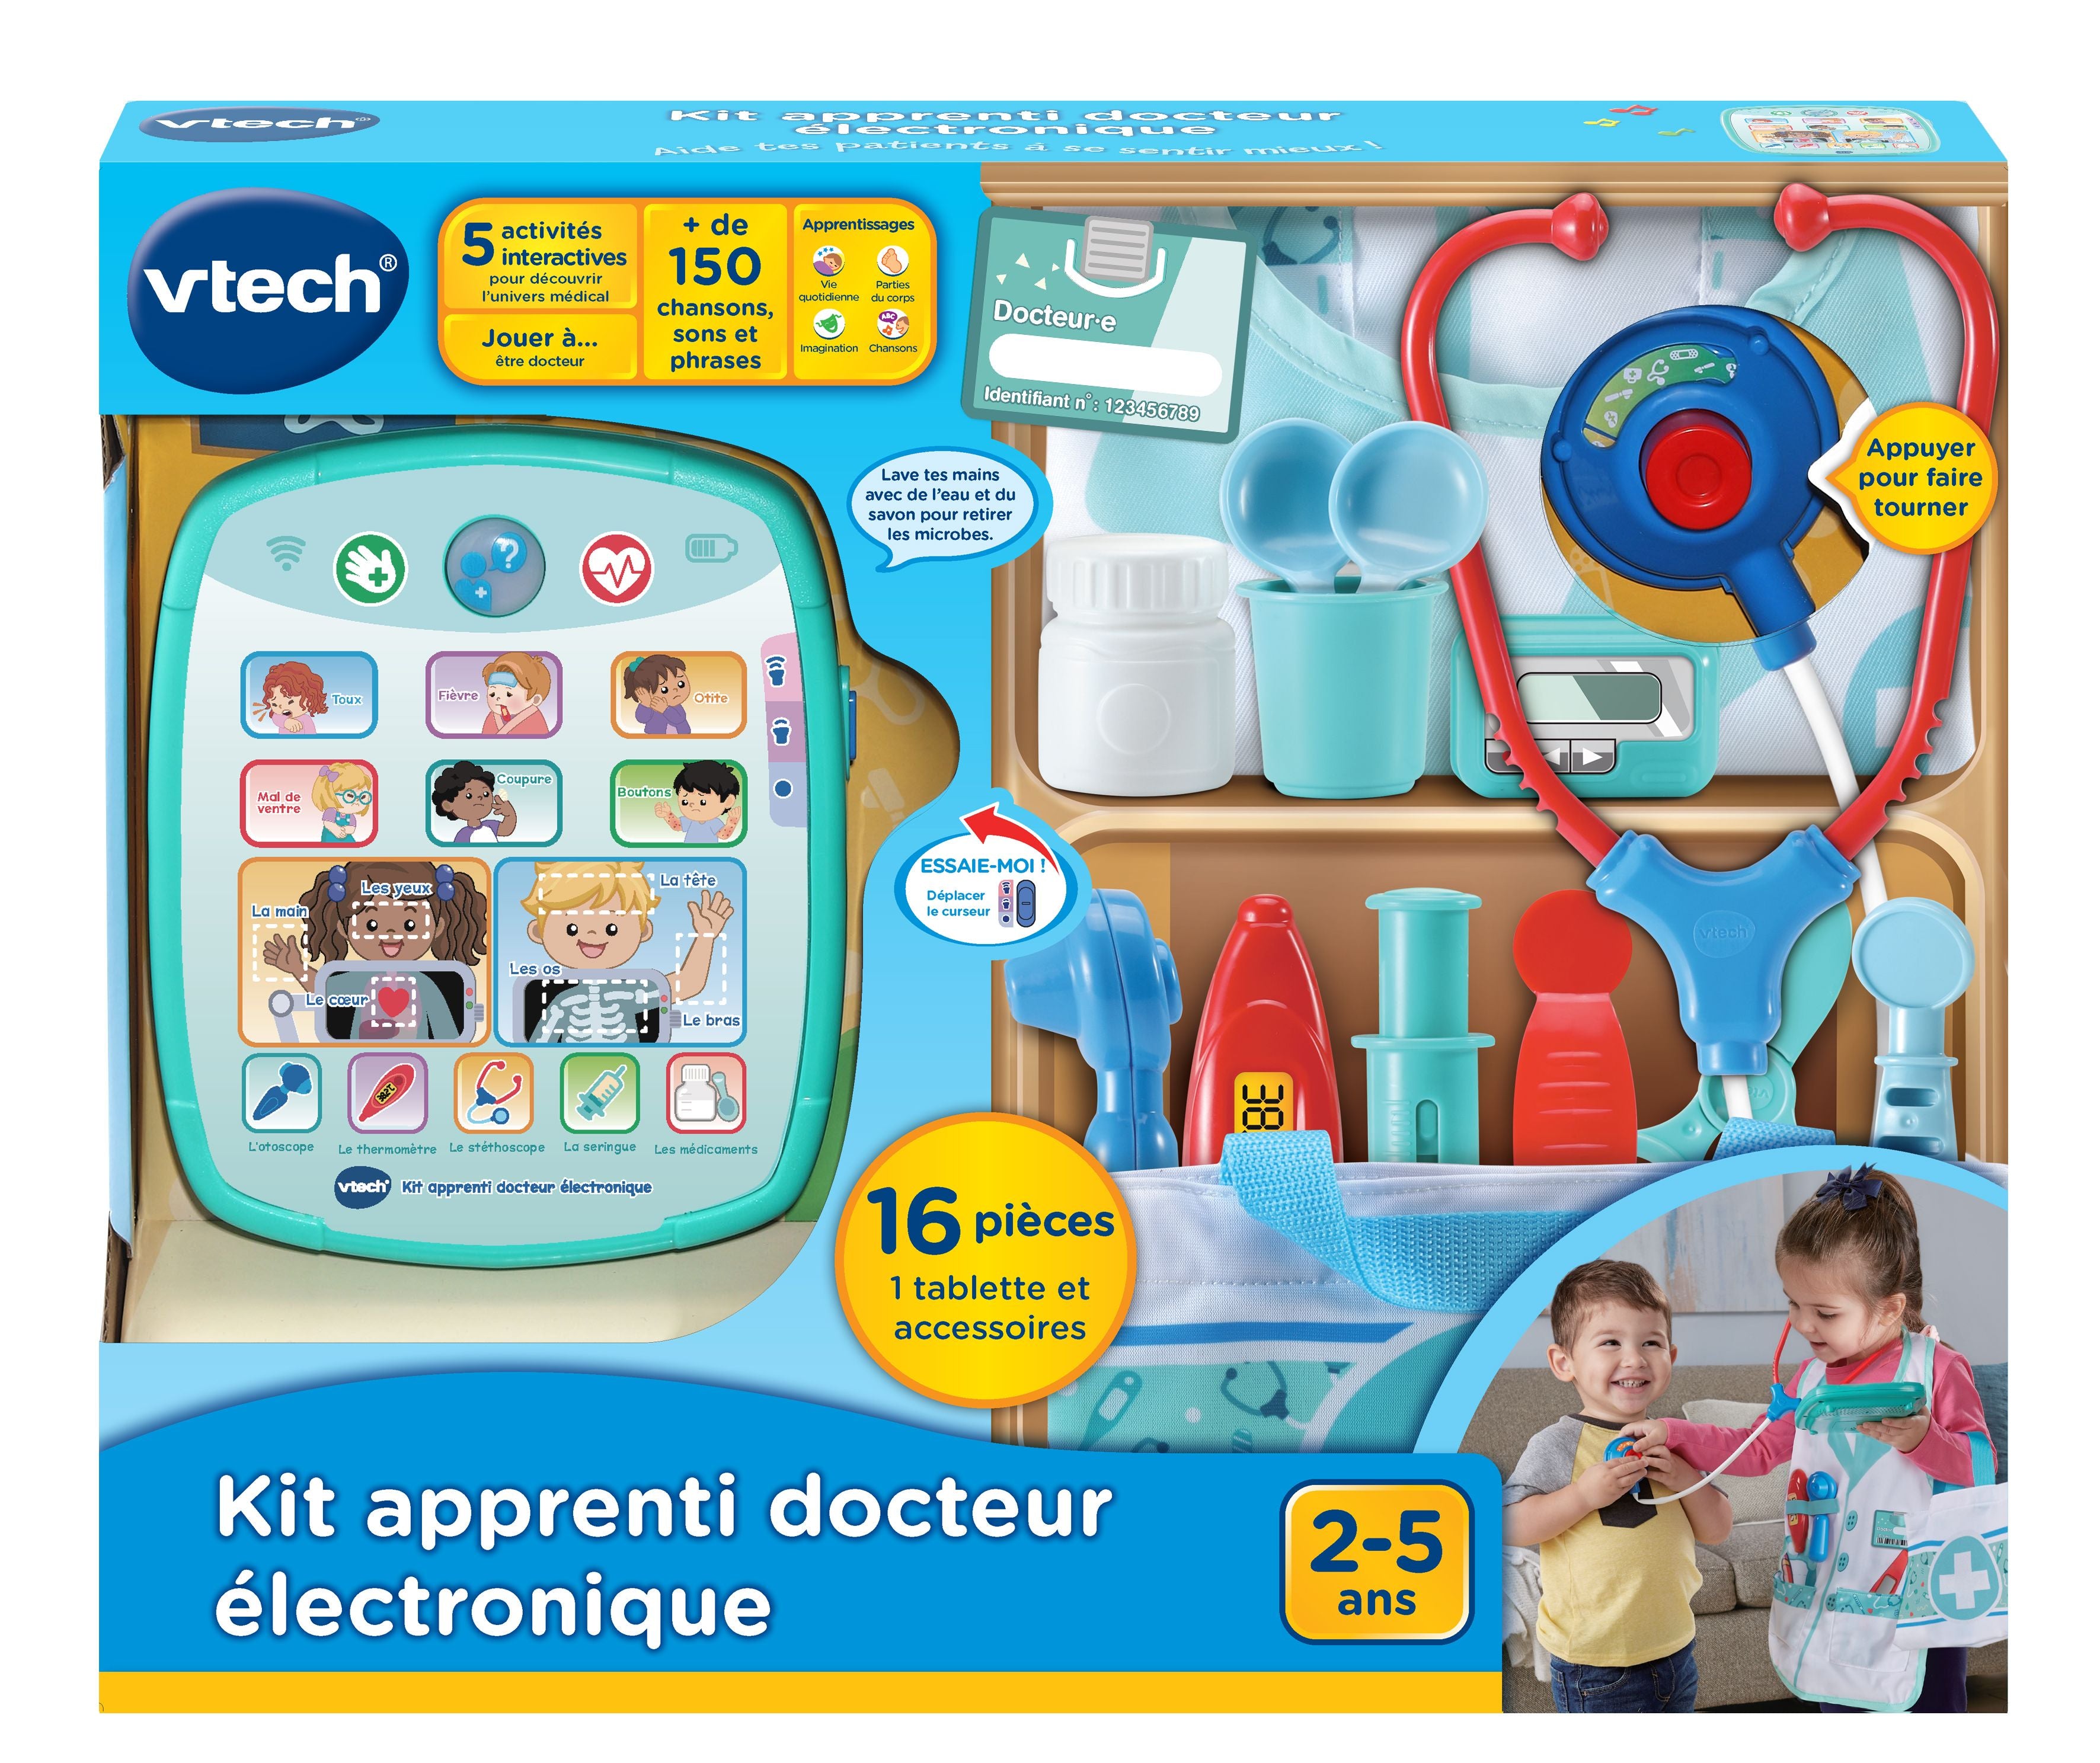 VTech Kit Apprenti Docteur Electronique French - KidsMug